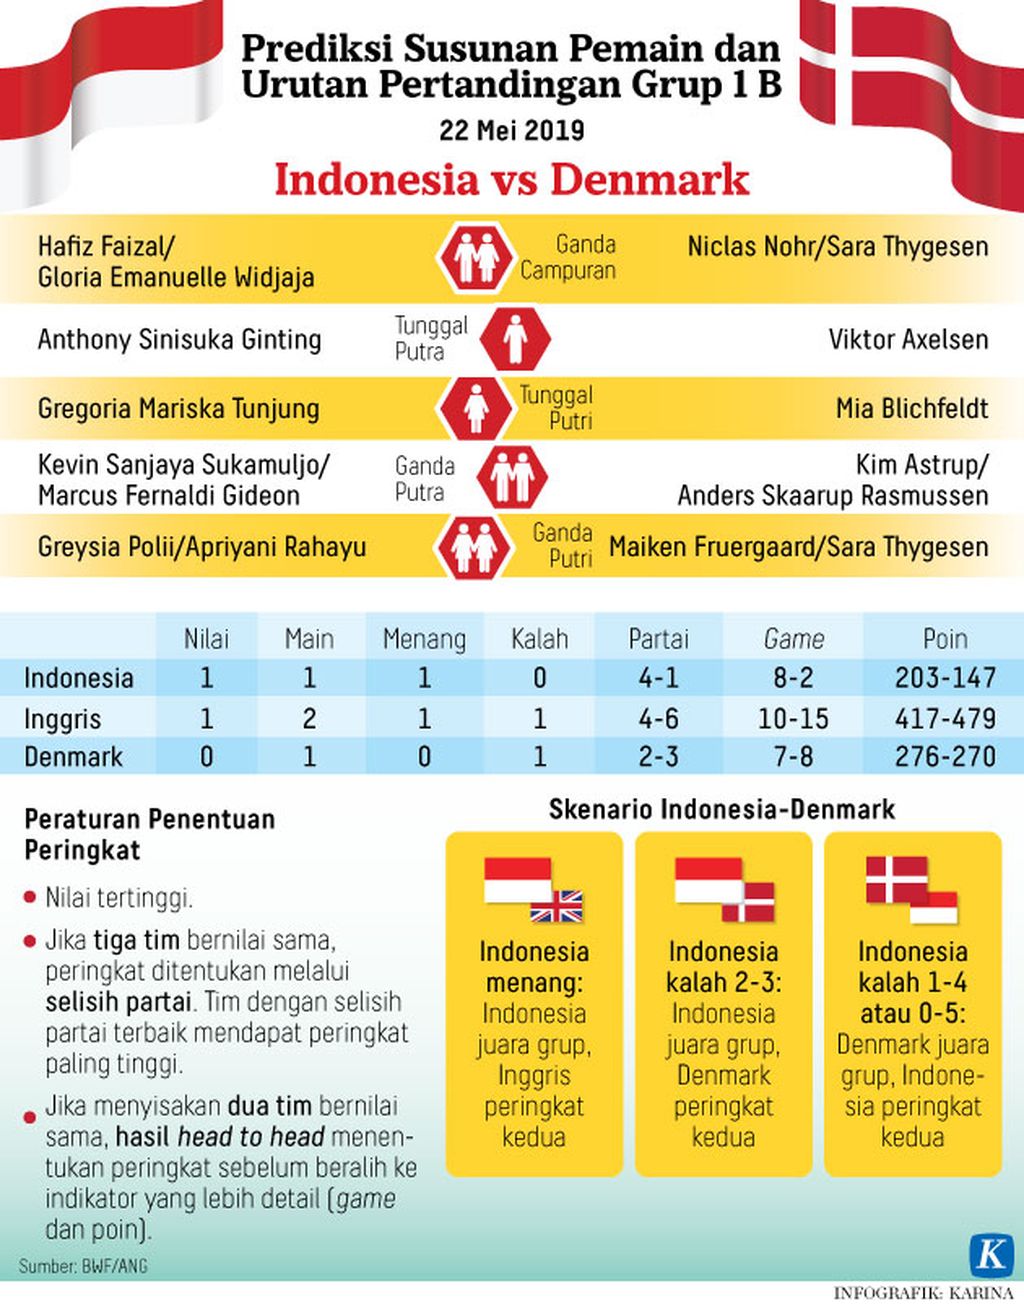 https://cdn-assetd.kompas.id/NYBmOaiF1KeD51FRK8yN83u-OIo=/1024x1304/https%3A%2F%2Fkompas.id%2Fwp-content%2Fuploads%2F2019%2F05%2F20190521-H22-MKP-Piala-Sudirman-Indonesia-vs-Denmark-mumed_1558452712.jpg